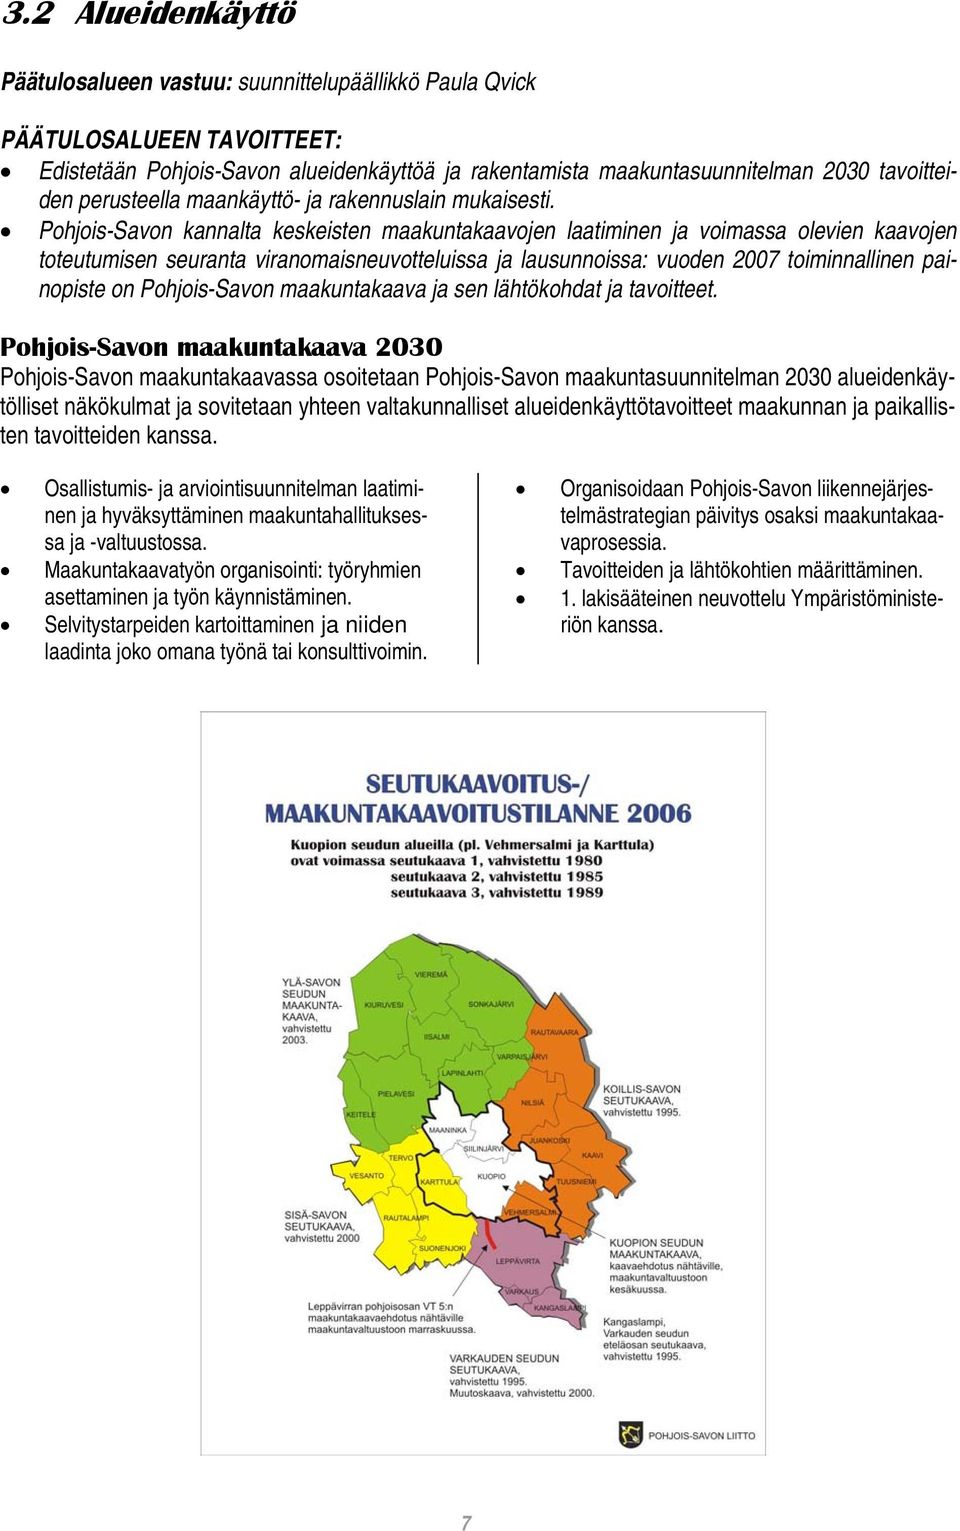 Pohjois-Savon kannalta keskeisten maakuntakaavojen laatiminen ja voimassa olevien kaavojen toteutumisen seuranta viranomaisneuvotteluissa ja lausunnoissa: vuoden 2007 toiminnallinen painopiste on